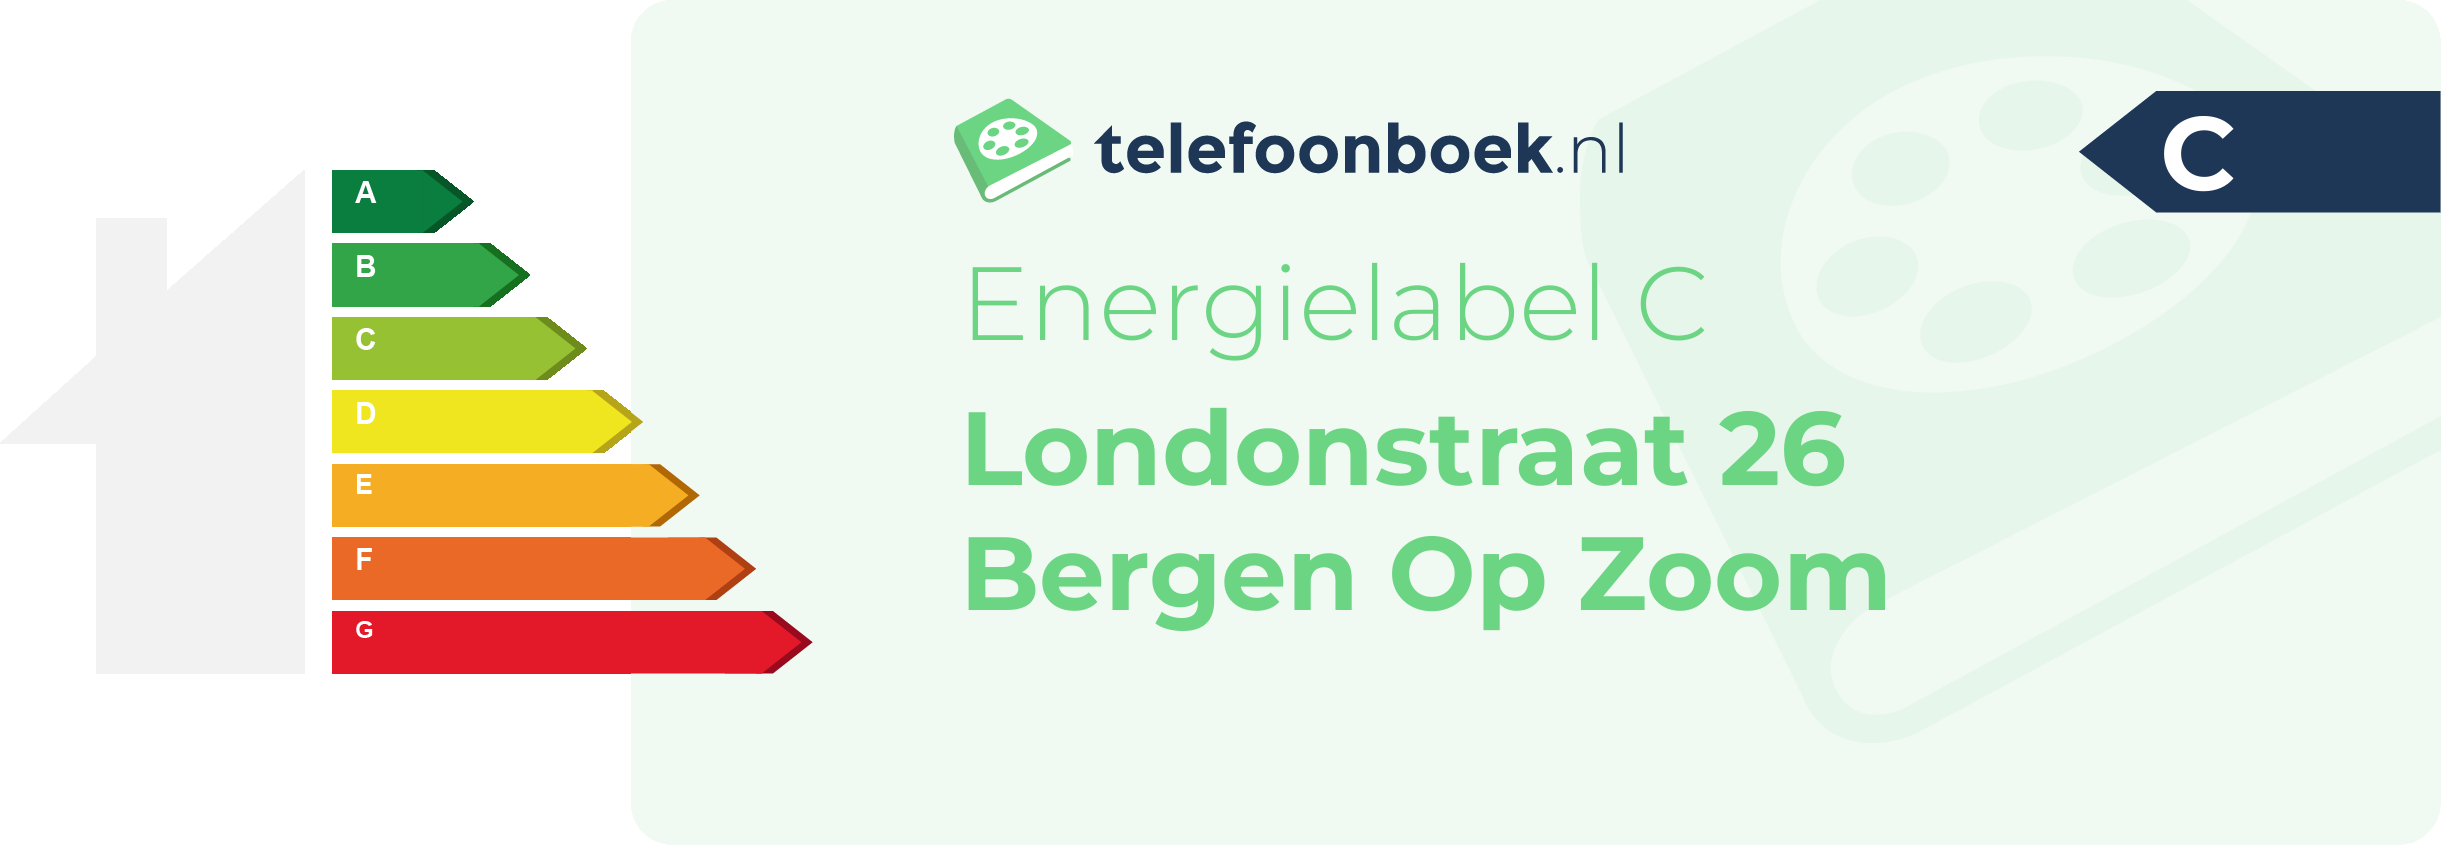 Energielabel Londonstraat 26 Bergen Op Zoom